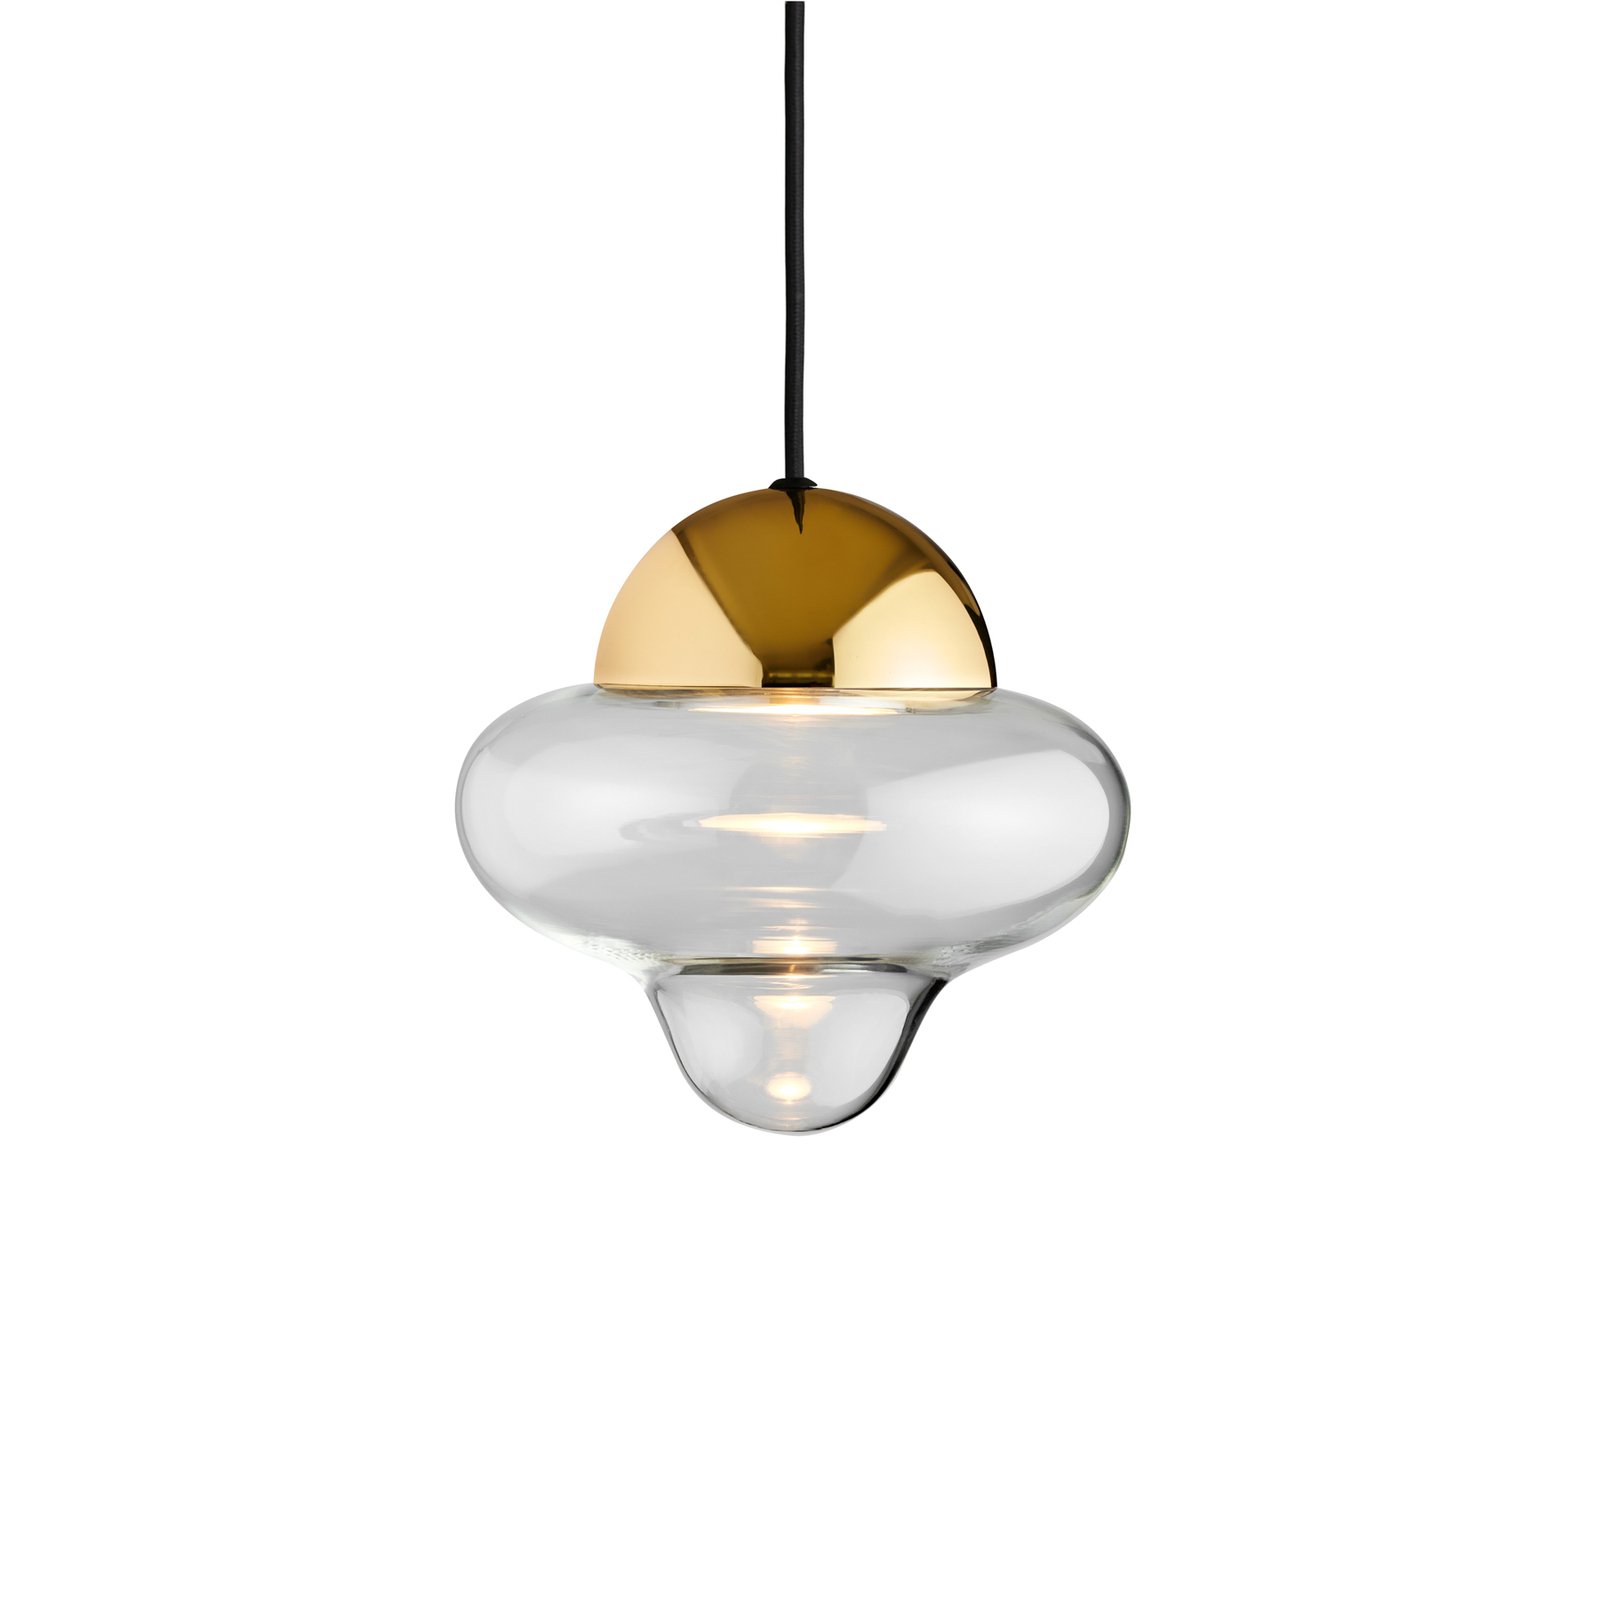 Nutty hanglamp, helder/goudkleurig, Ø 18,5 cm, glas